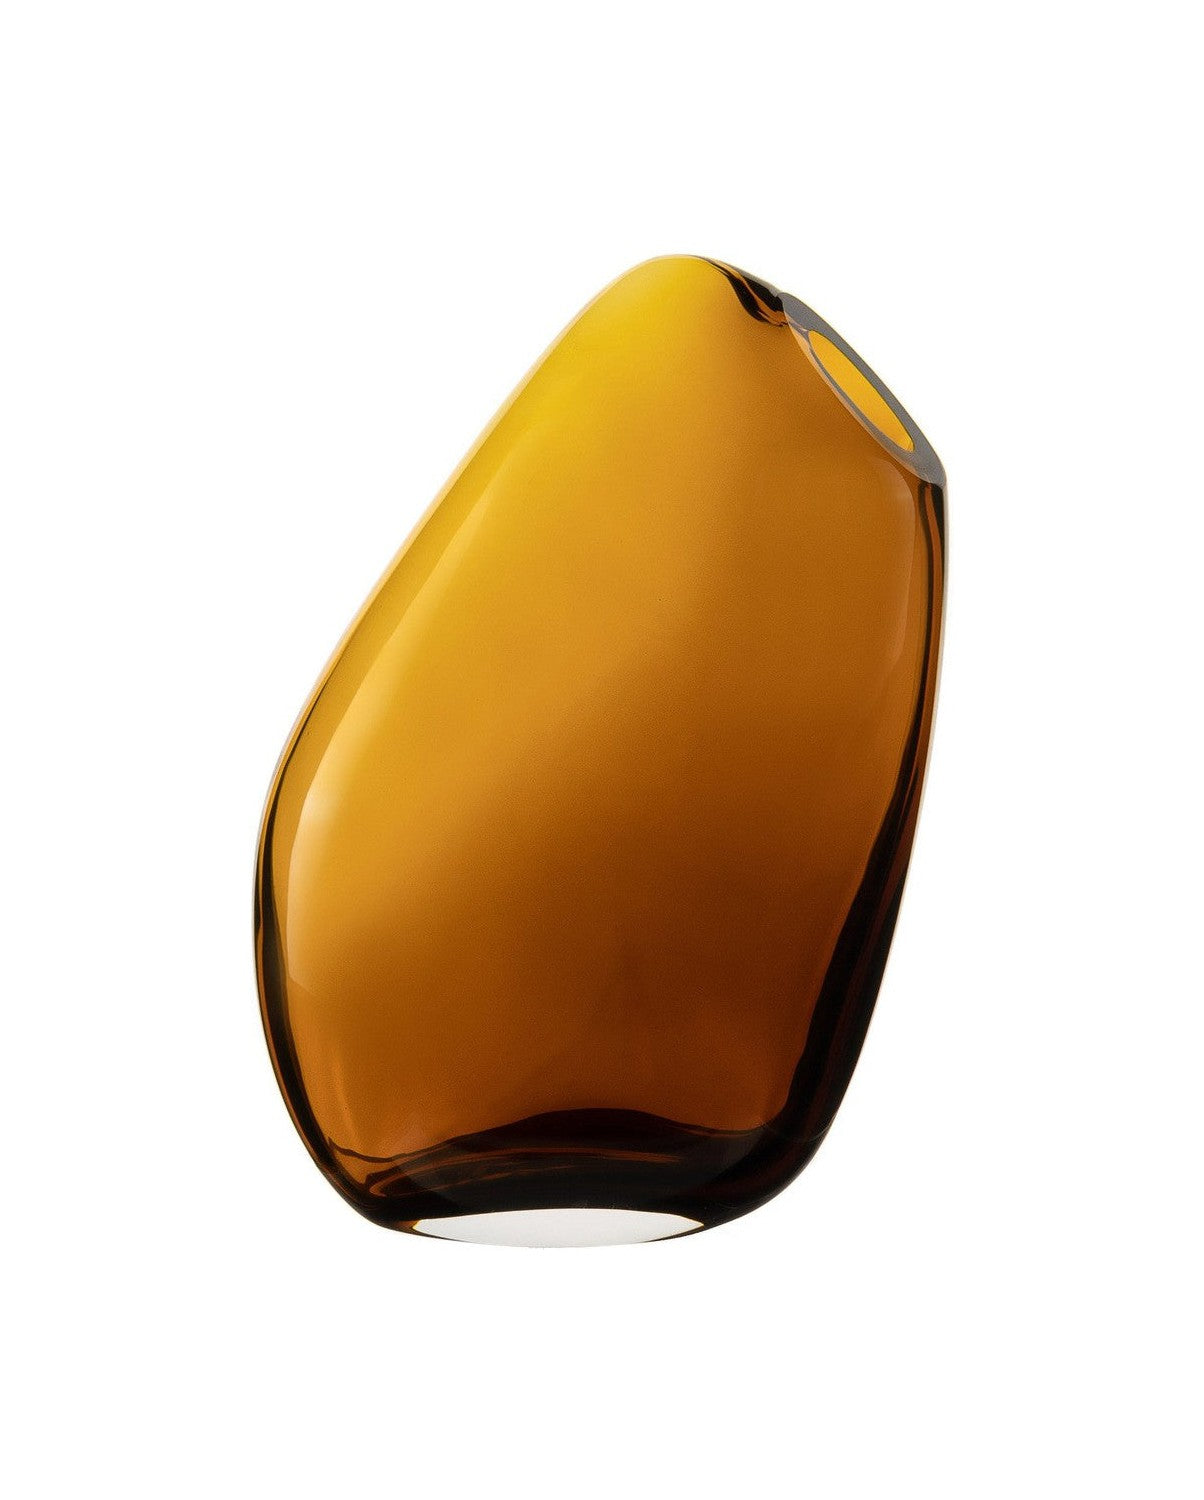 Wysoki nowoczesny wazon bardzo innowacyjnego trzeźwego designu, Kooky30am